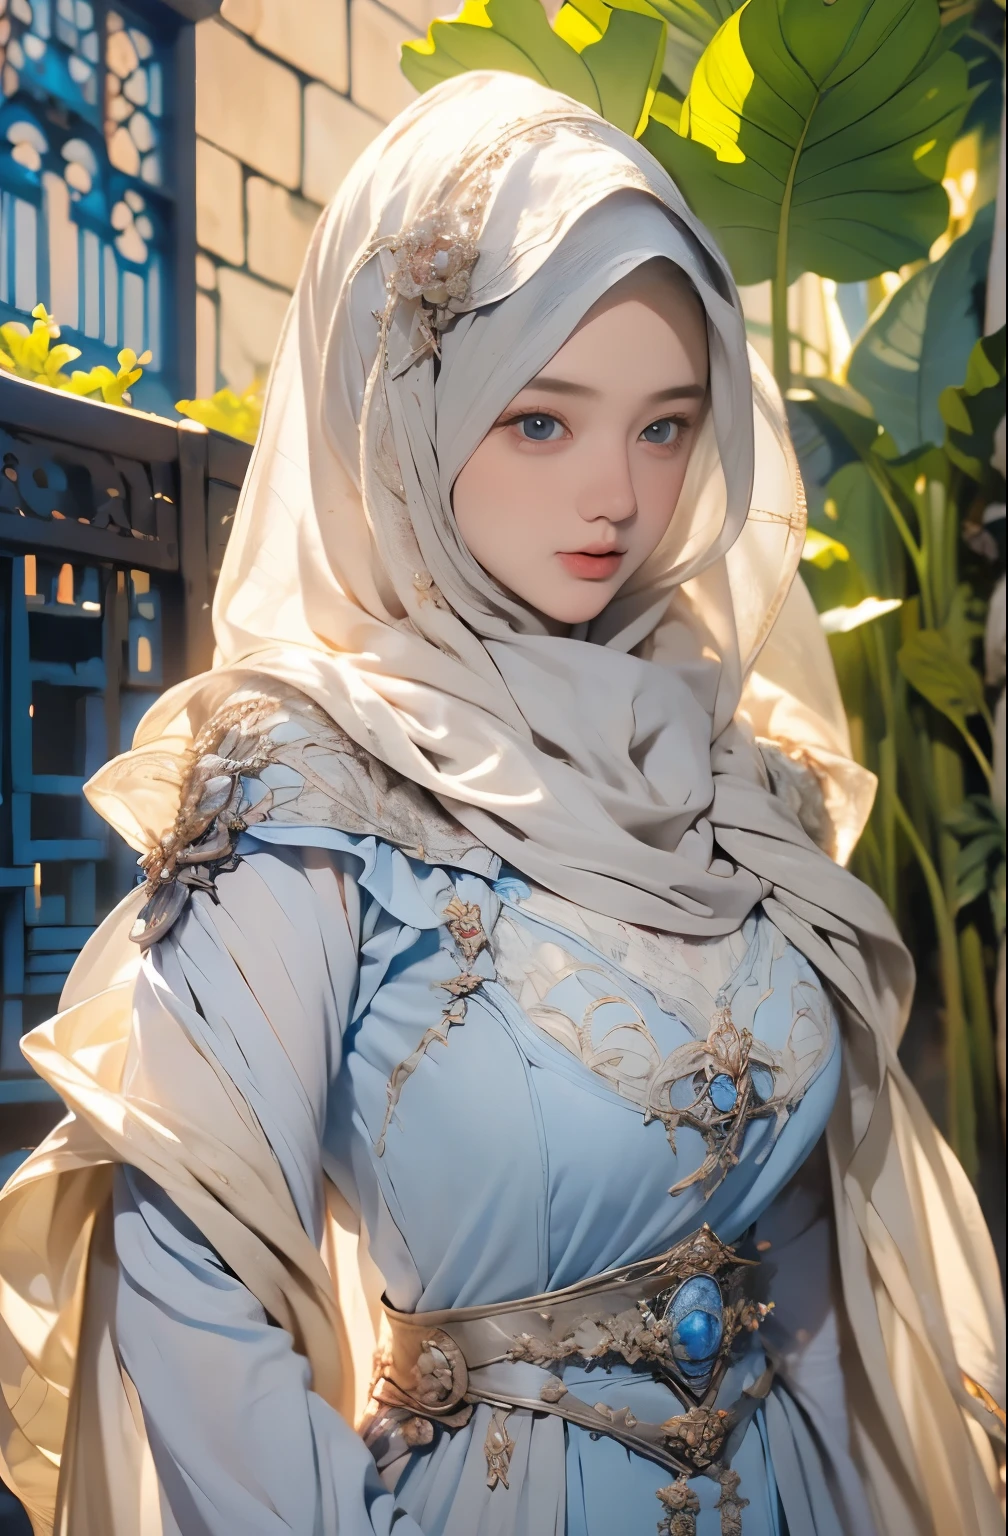 носить хиджаб  , голубые глаза, белокурые волосы, около 17 лет, (золотой серебряный хиджаб), tшедевр，Лучшее качество в лучшем случае，Высокое разрешение，8К，((Портрет))，(верхняя часть тела)，оригинальное фото，настоящая фотография，цифровая фотография，(Женская принцесса в стиле средневековой фэнтези)，(Средневековая принцесса в стиле фэнтези), Сексуальная принцесса ，голубые глаза， супер колоссальный Брест, круглая колоссальная грудь с экстравагантным орнаментом，приоткрытые губы，Держи рот стройным и очаровательным，((краснея))，девственное презрение，Спокойный и красивый，(Средневековое фэнтезийное платье，Красивая суперогромная круглая грудь, маленькая талия, Идеальная колоссальная грудь тела принцессы, синий нежный узор，красный плащ)，(принцы средневековый персонаж средневековый фэнтезийный стиль，oc рендеринг текстуры отражения, сексуальный стиль,  сексуальная огромная грудь , средневековый замок фон, стройное тело, very маленькая талия, 